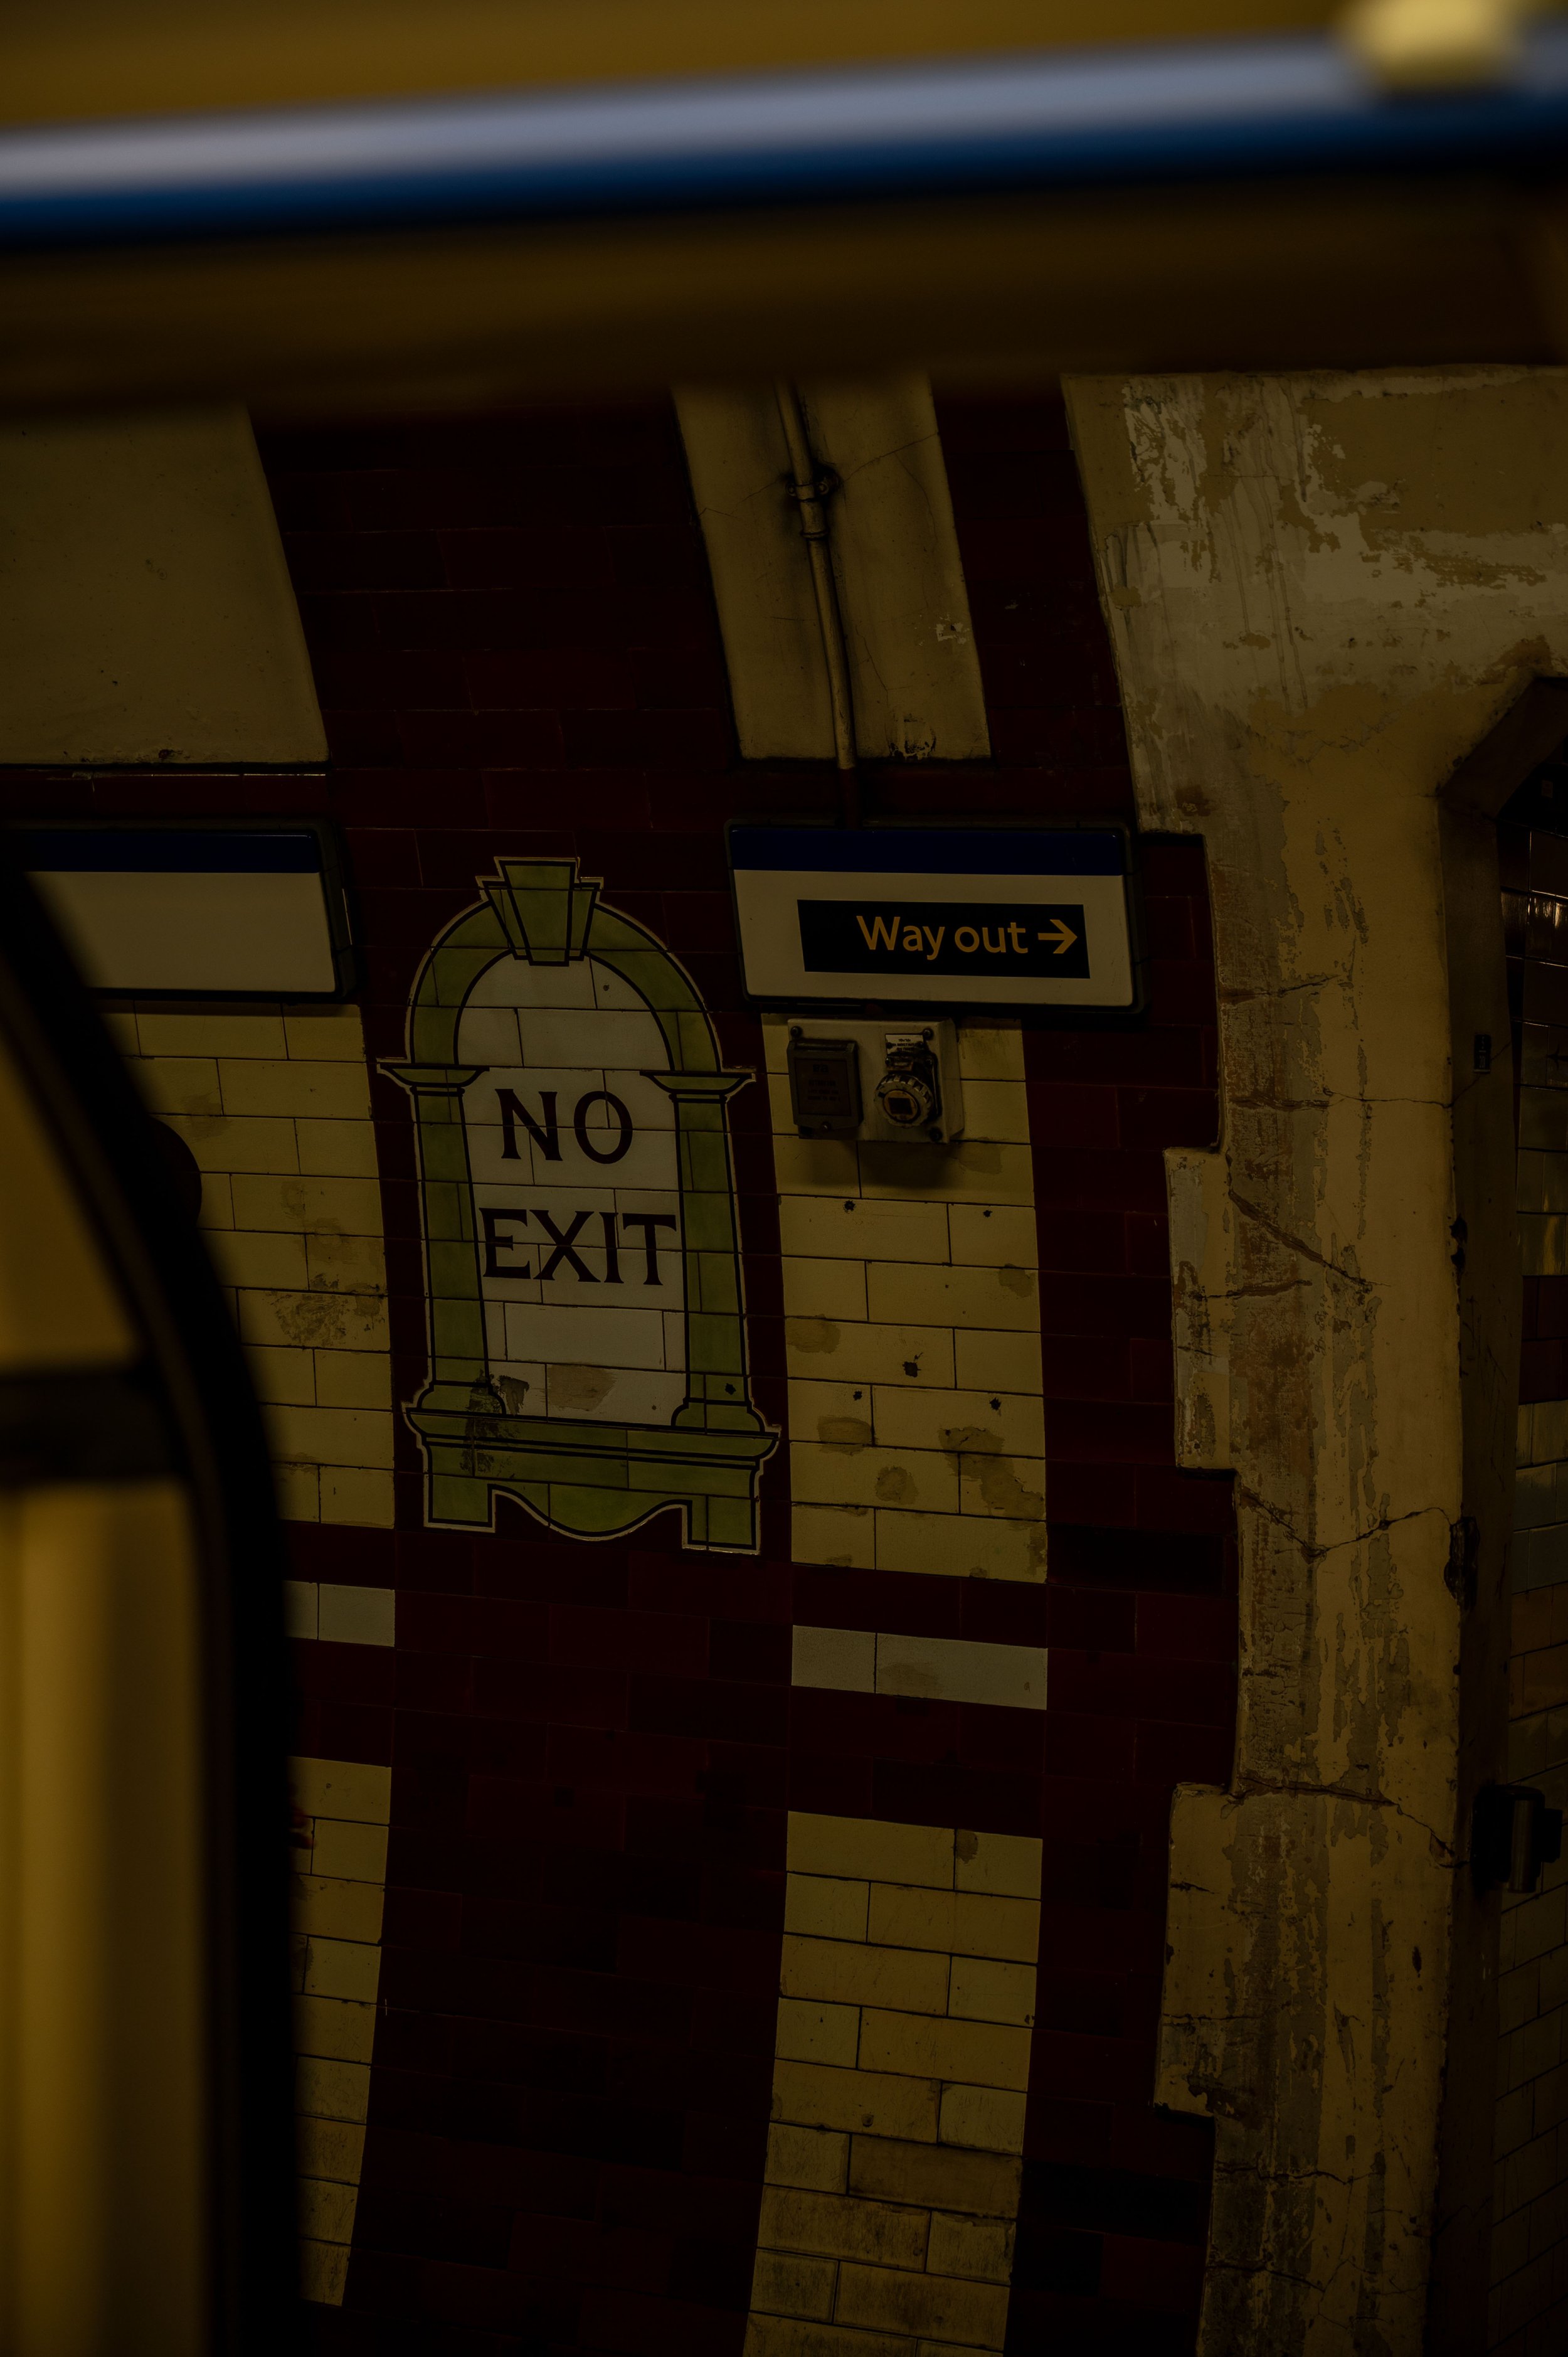 Fotos aus der Londoner U-Bahn Tube zeigen das Leben der Engländer hautnah (1)